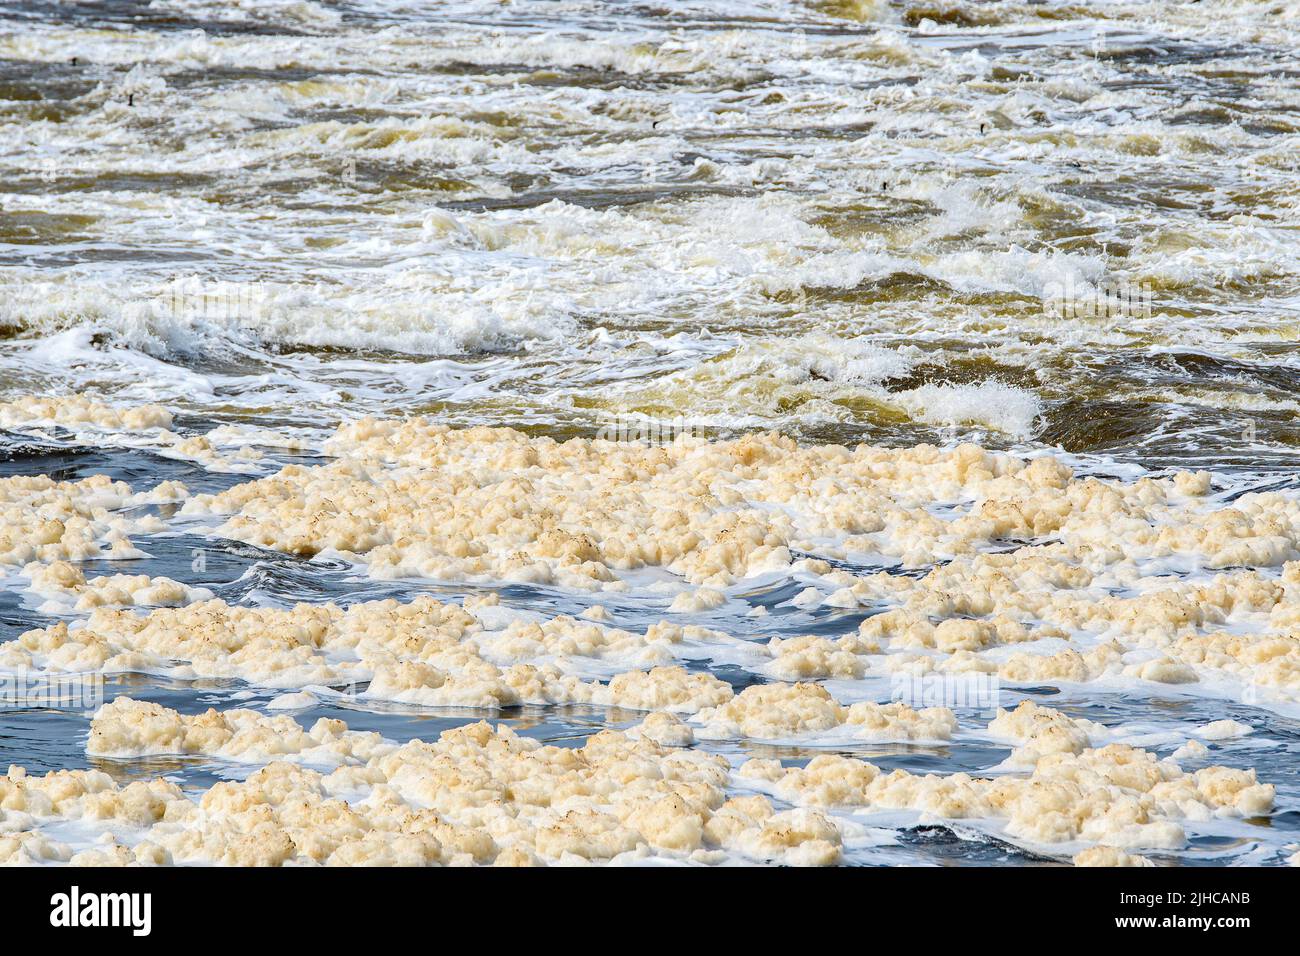 Un fiume che scorre velocemente riempito di schiuma inquinante sporca. La schiuma è di colore marrone chiaro e sporco. Profondità di campo poco profonda. Foto Stock